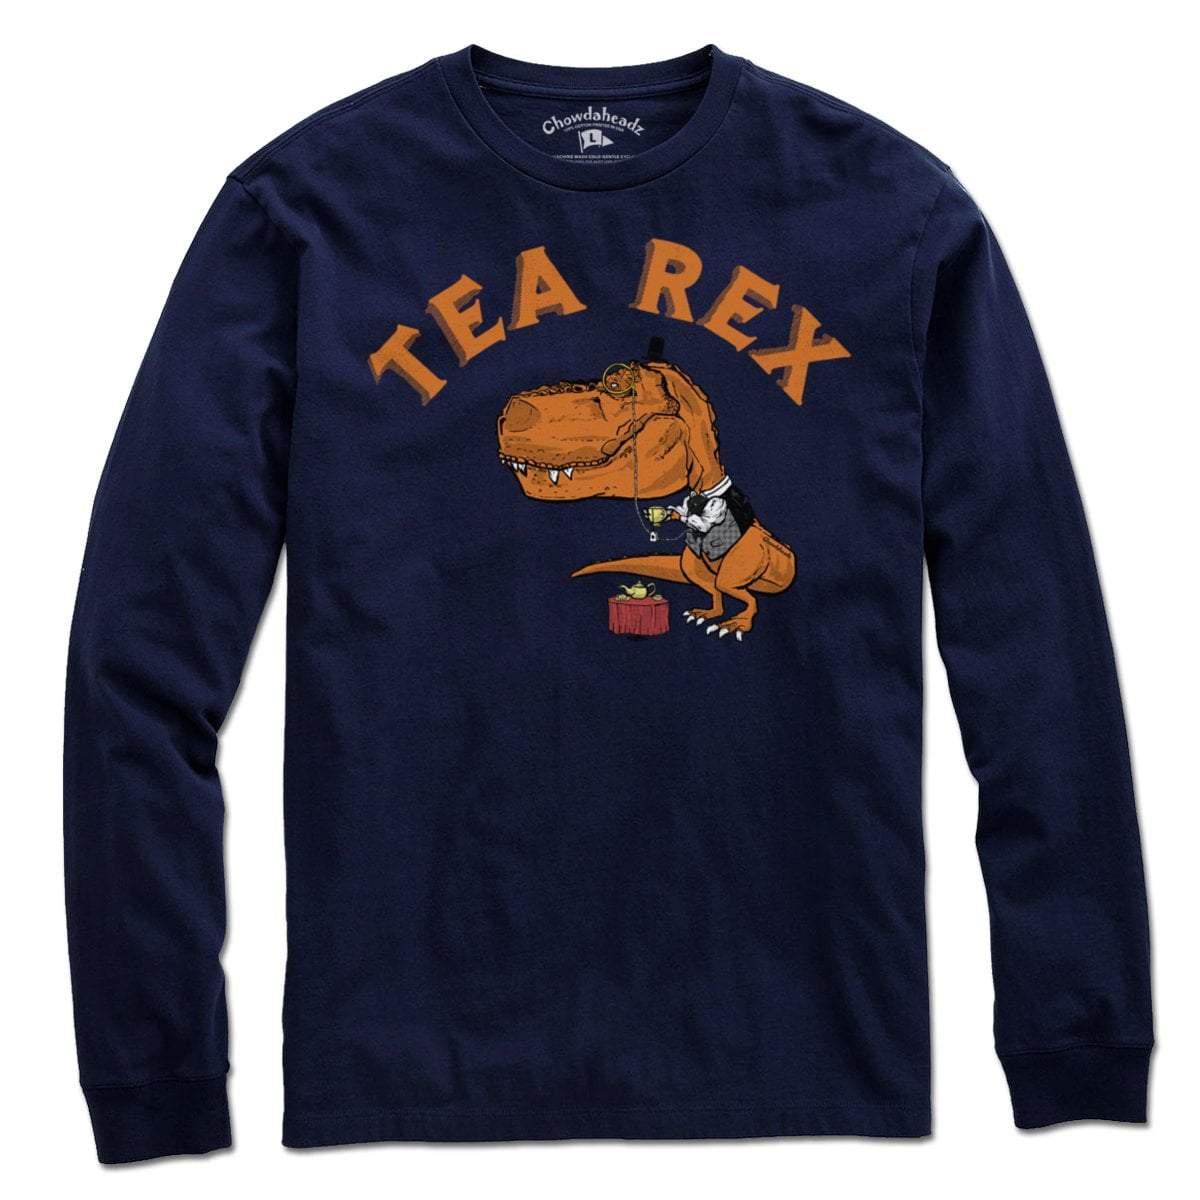 Tea Rex T-Shirt - Chowdaheadz